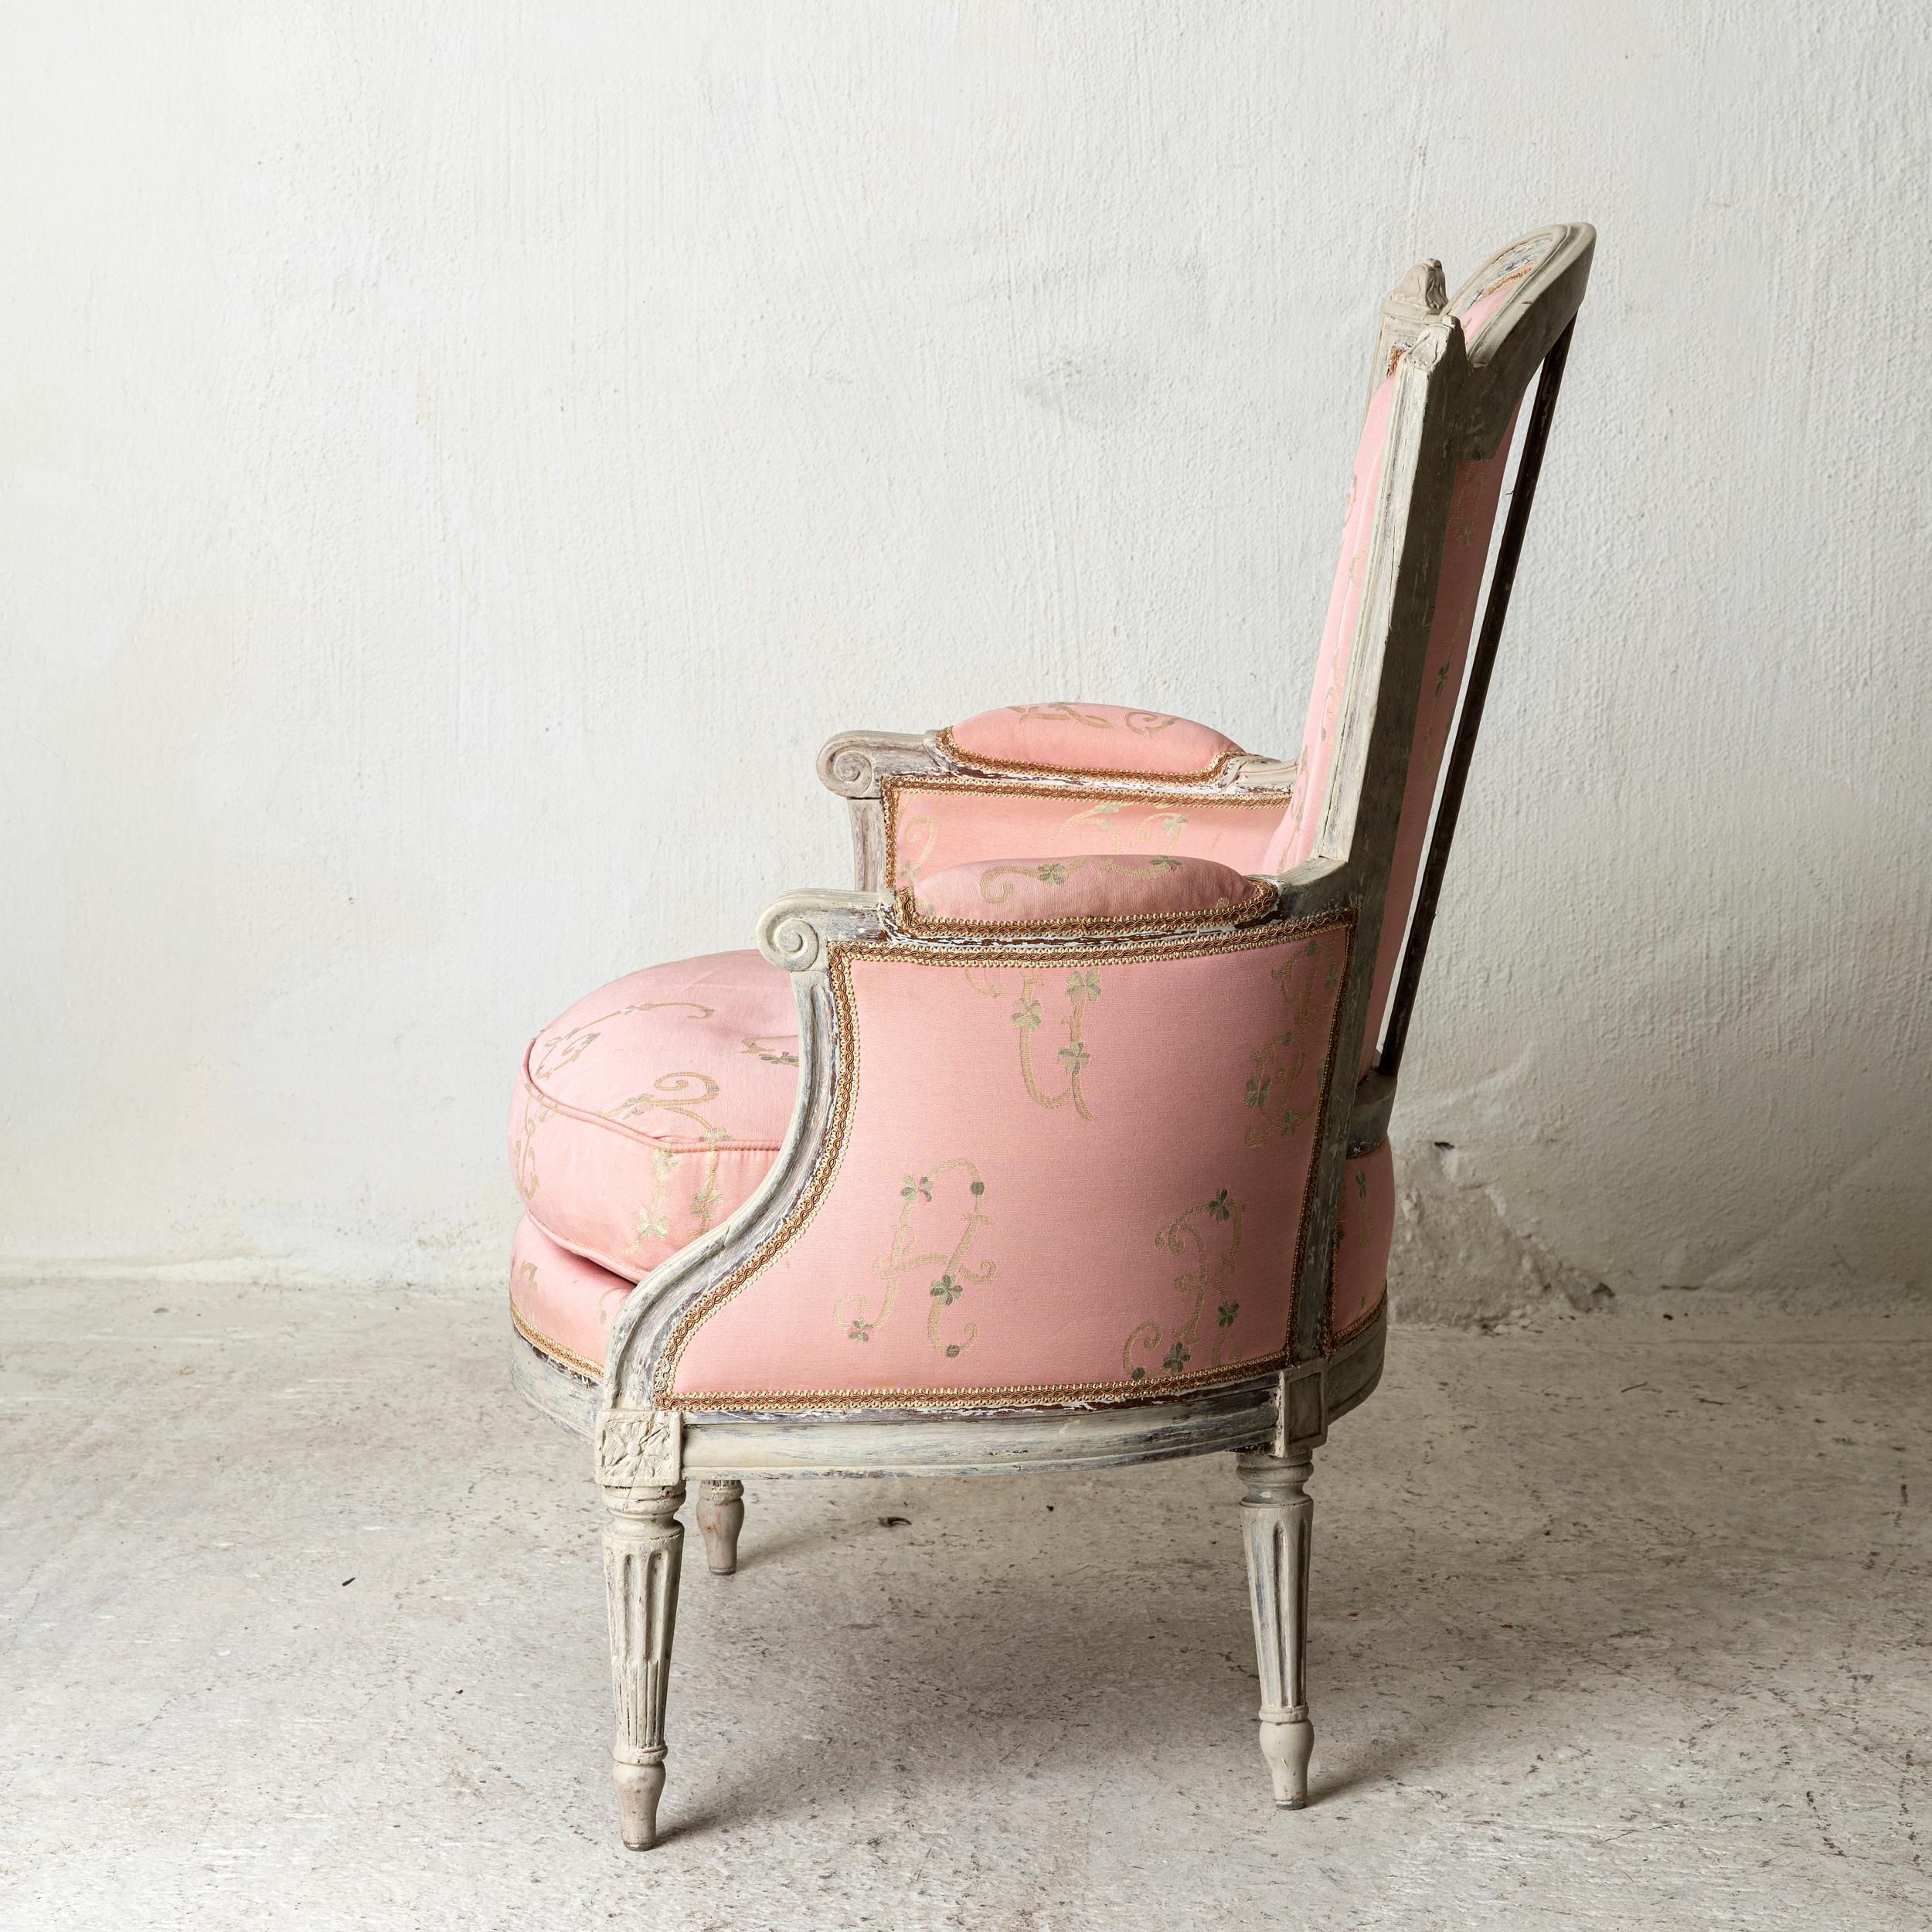 Stuhl bergère Louis XVI neoklassischen Französisch weiß rosa Frankreich. Ein Bergsessel aus der Zeit Ludwigs XVI. in Frankreich. In weißer Farbe lackiert. Gekehlte Beine und Armlehnen. Schöne Schnitzereien in Rücken und Fries. Gepolstert mit einem